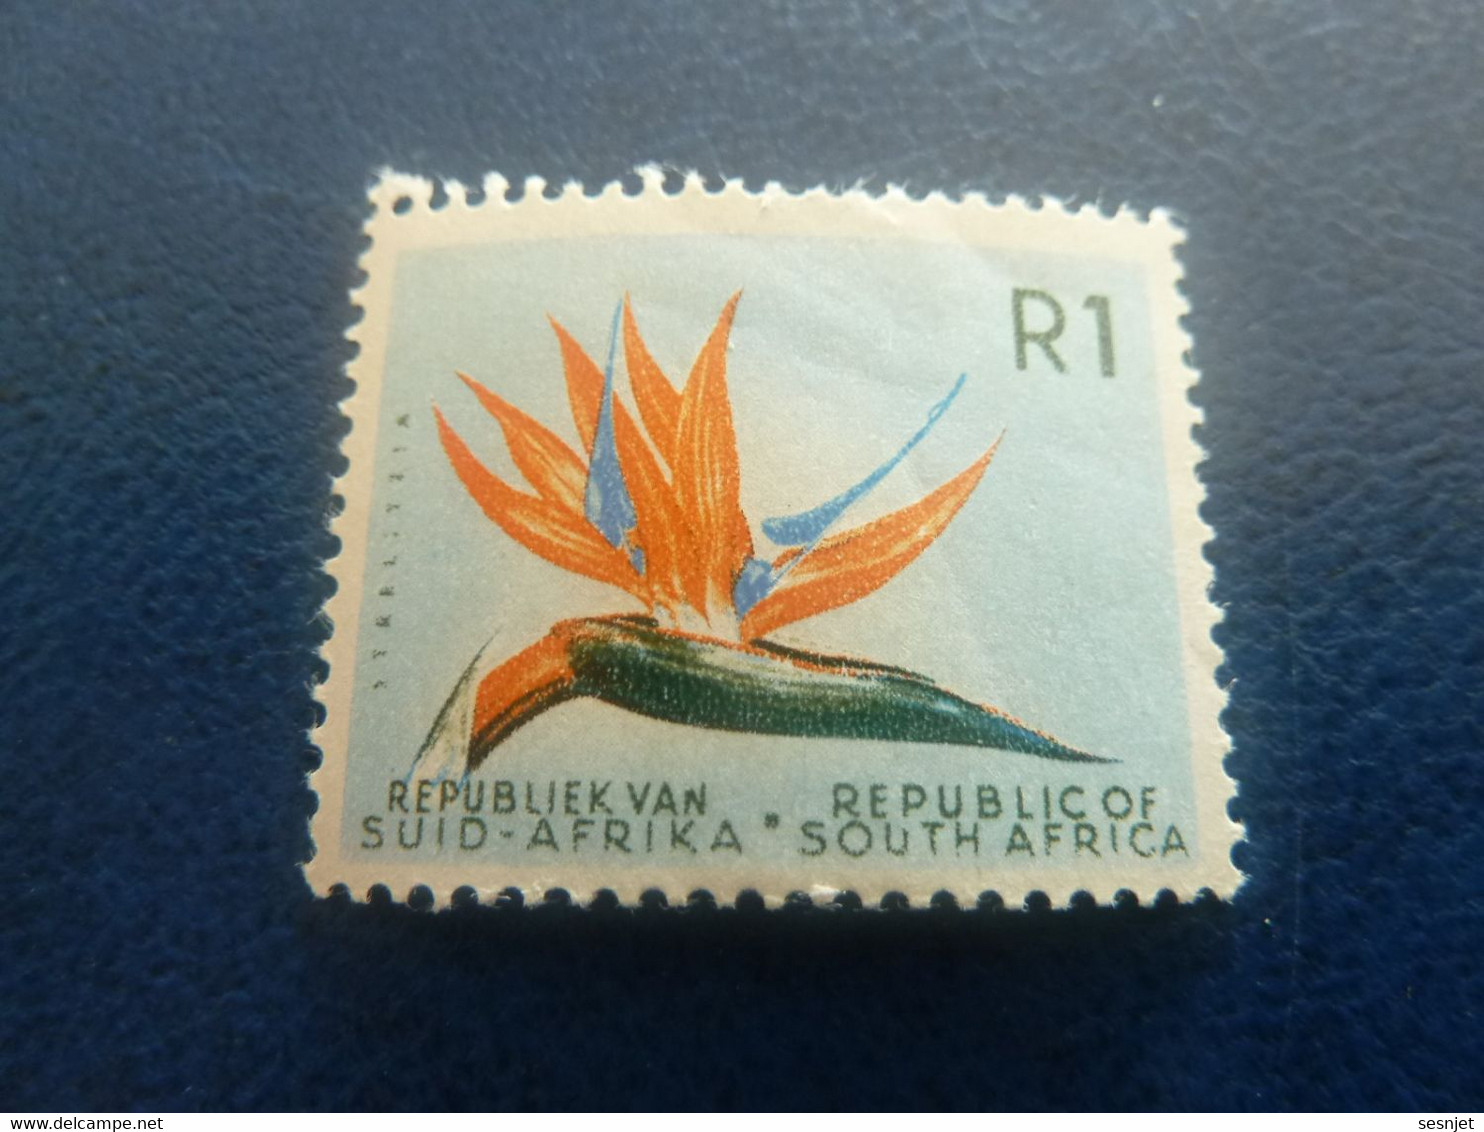 Republiek Van Suid-Africa - Botanique - R 1 - Multicolore - Neuf - - Nuovi